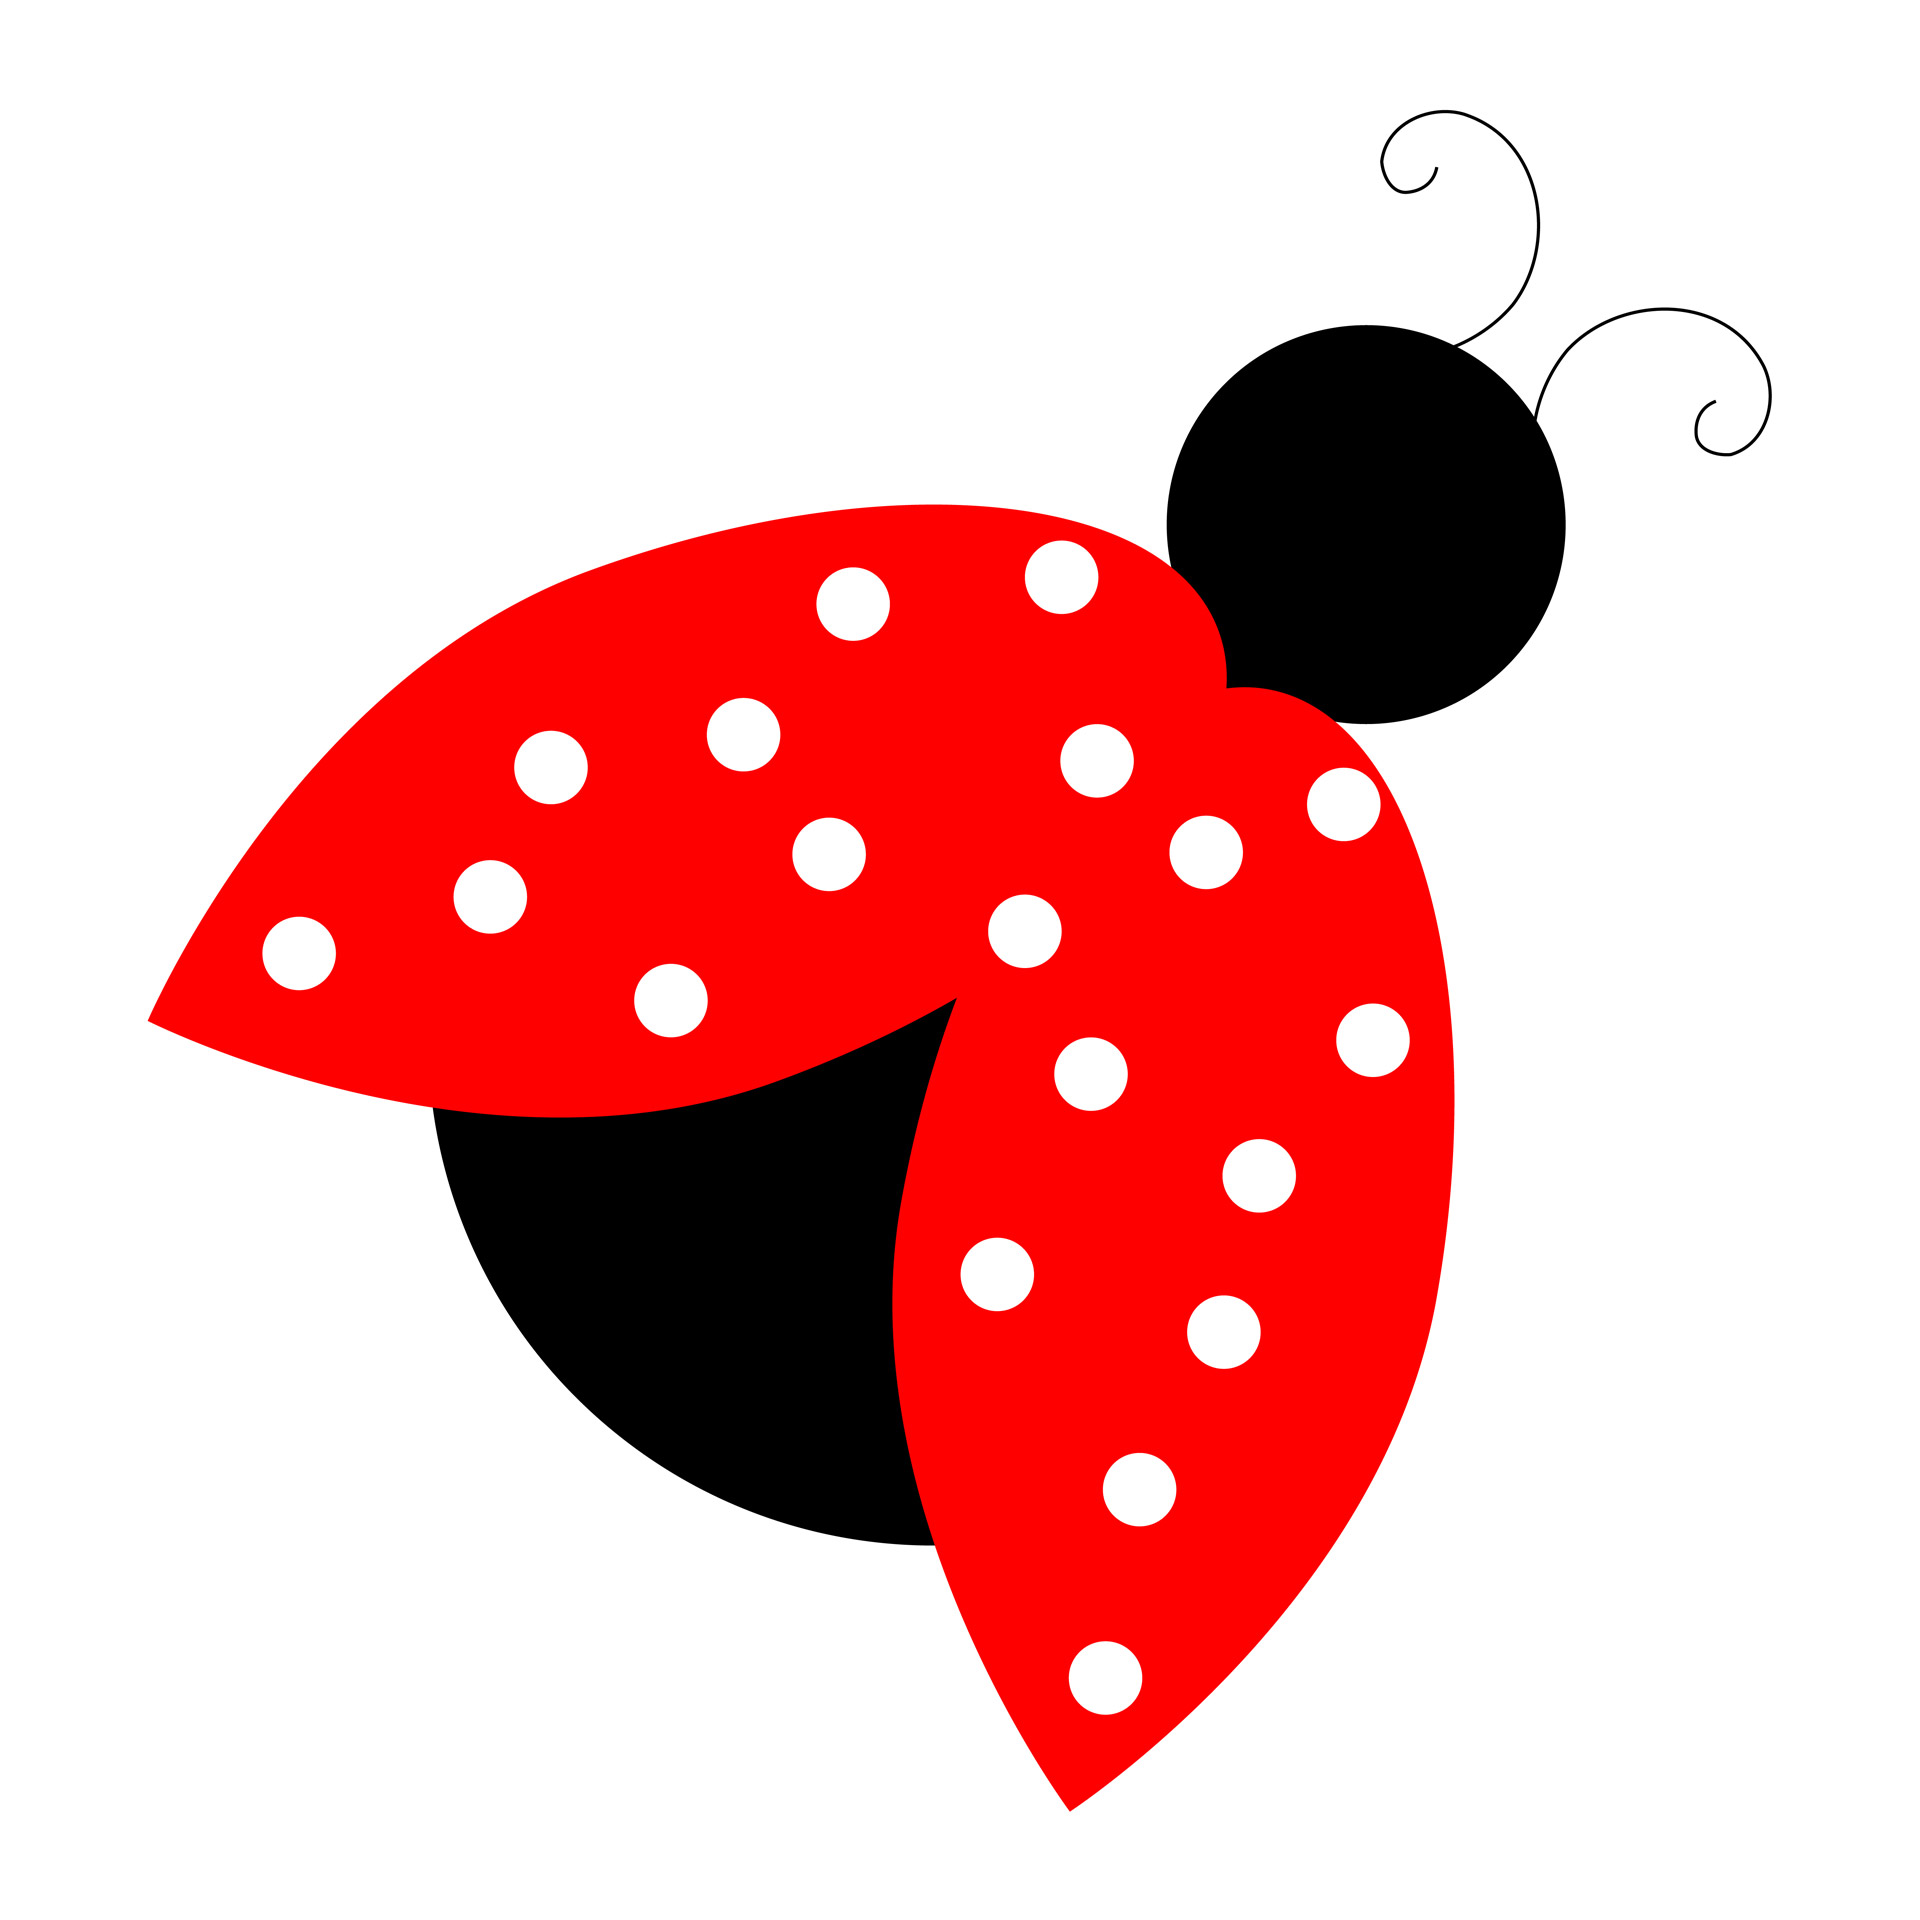 ladybug images clip art - photo #32